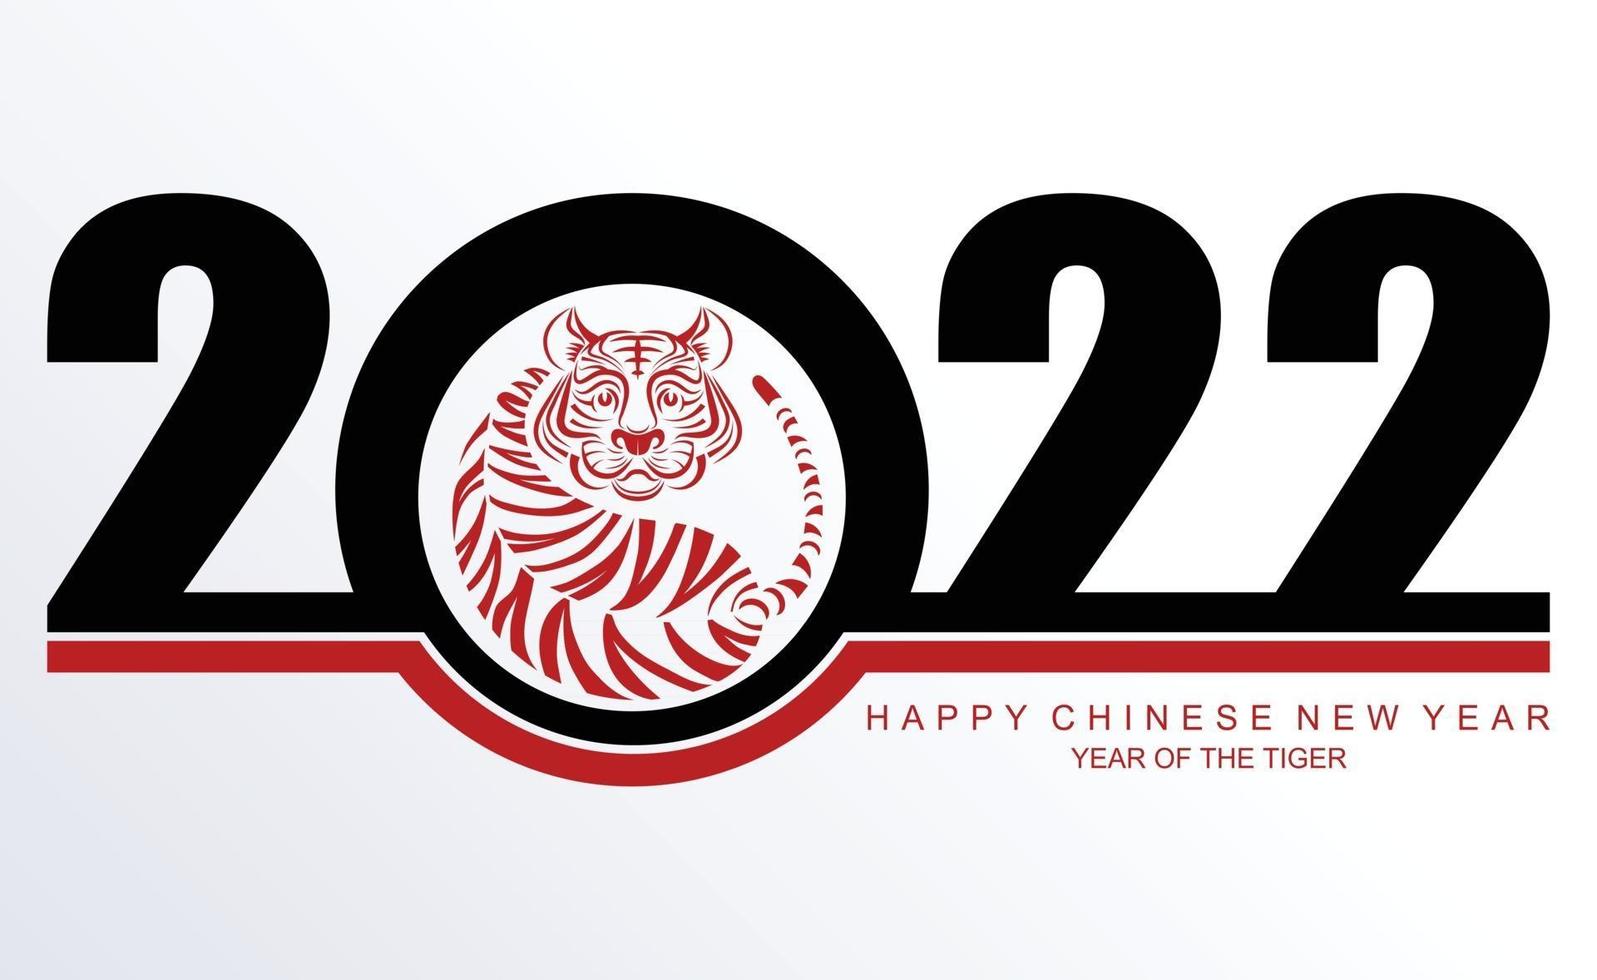 nouvel an chinois 2022 année du tigre vecteur